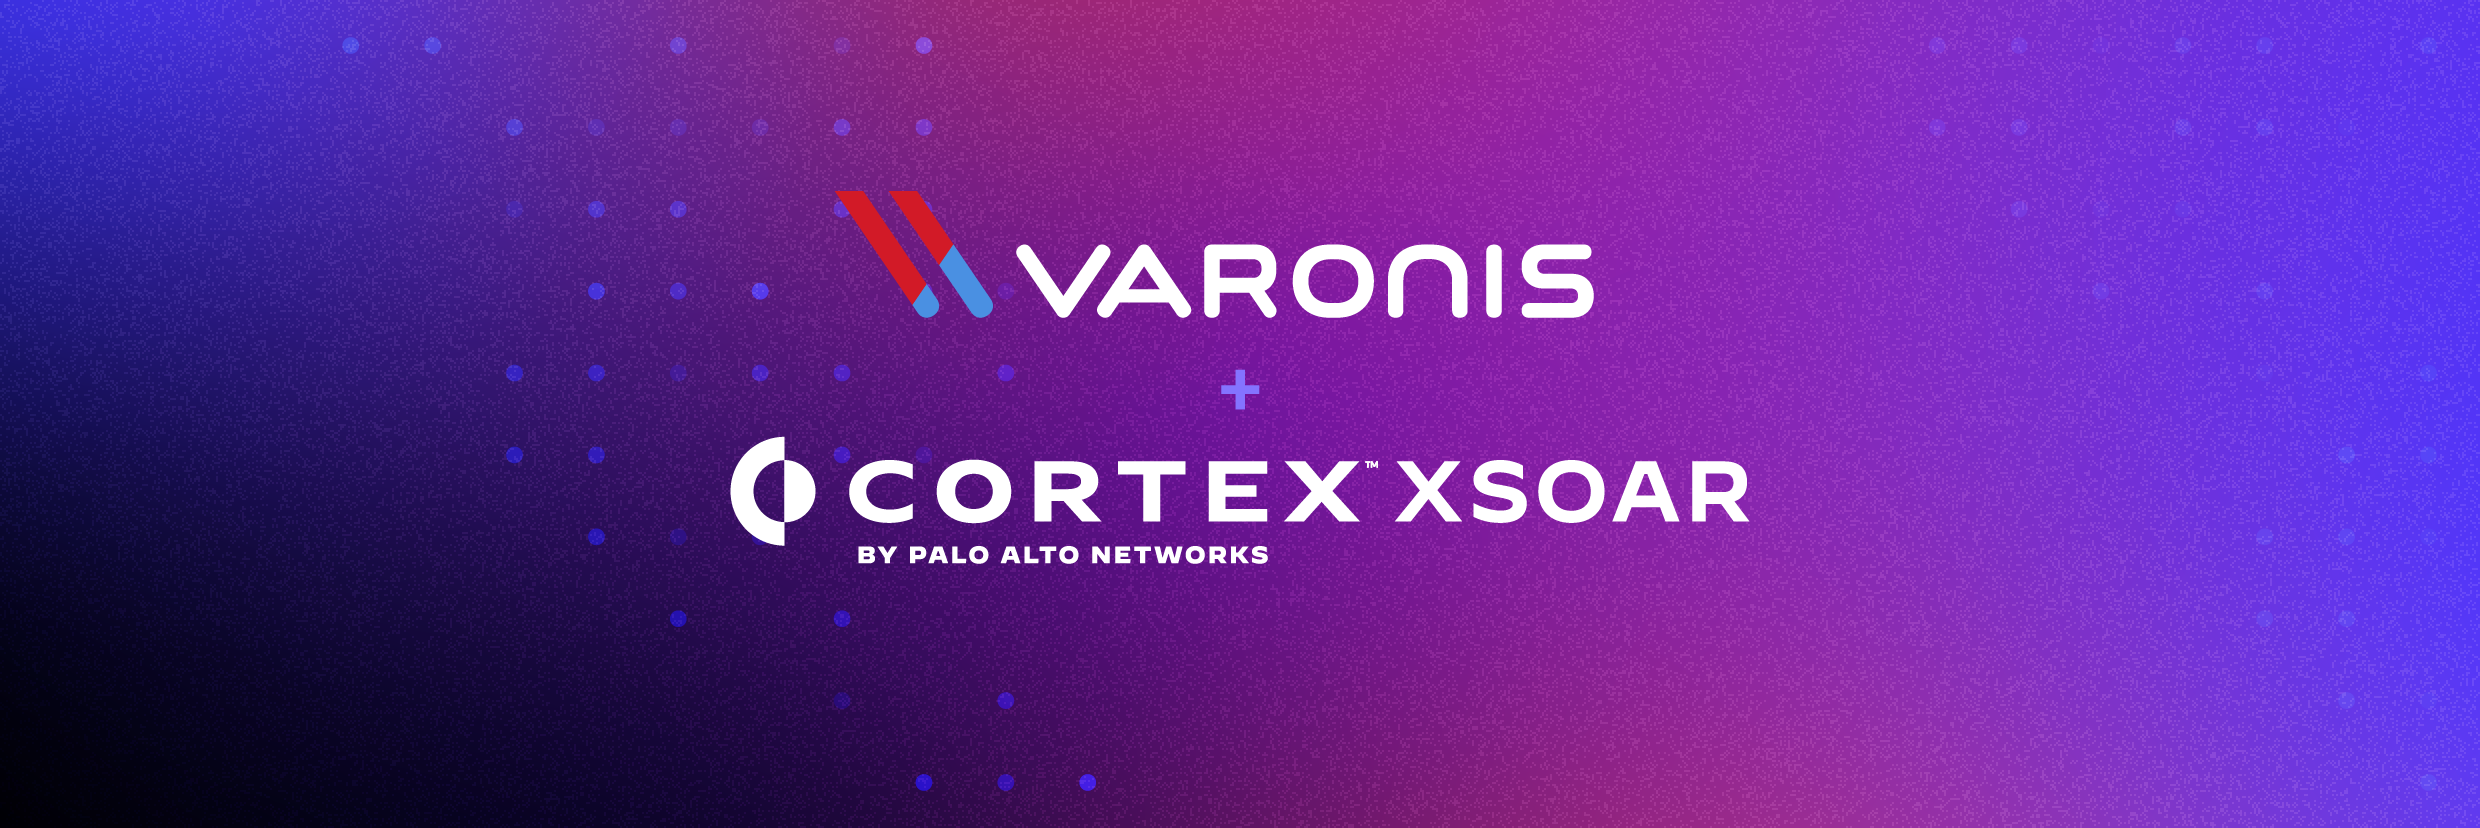 Varonis und Cortex XSOAR